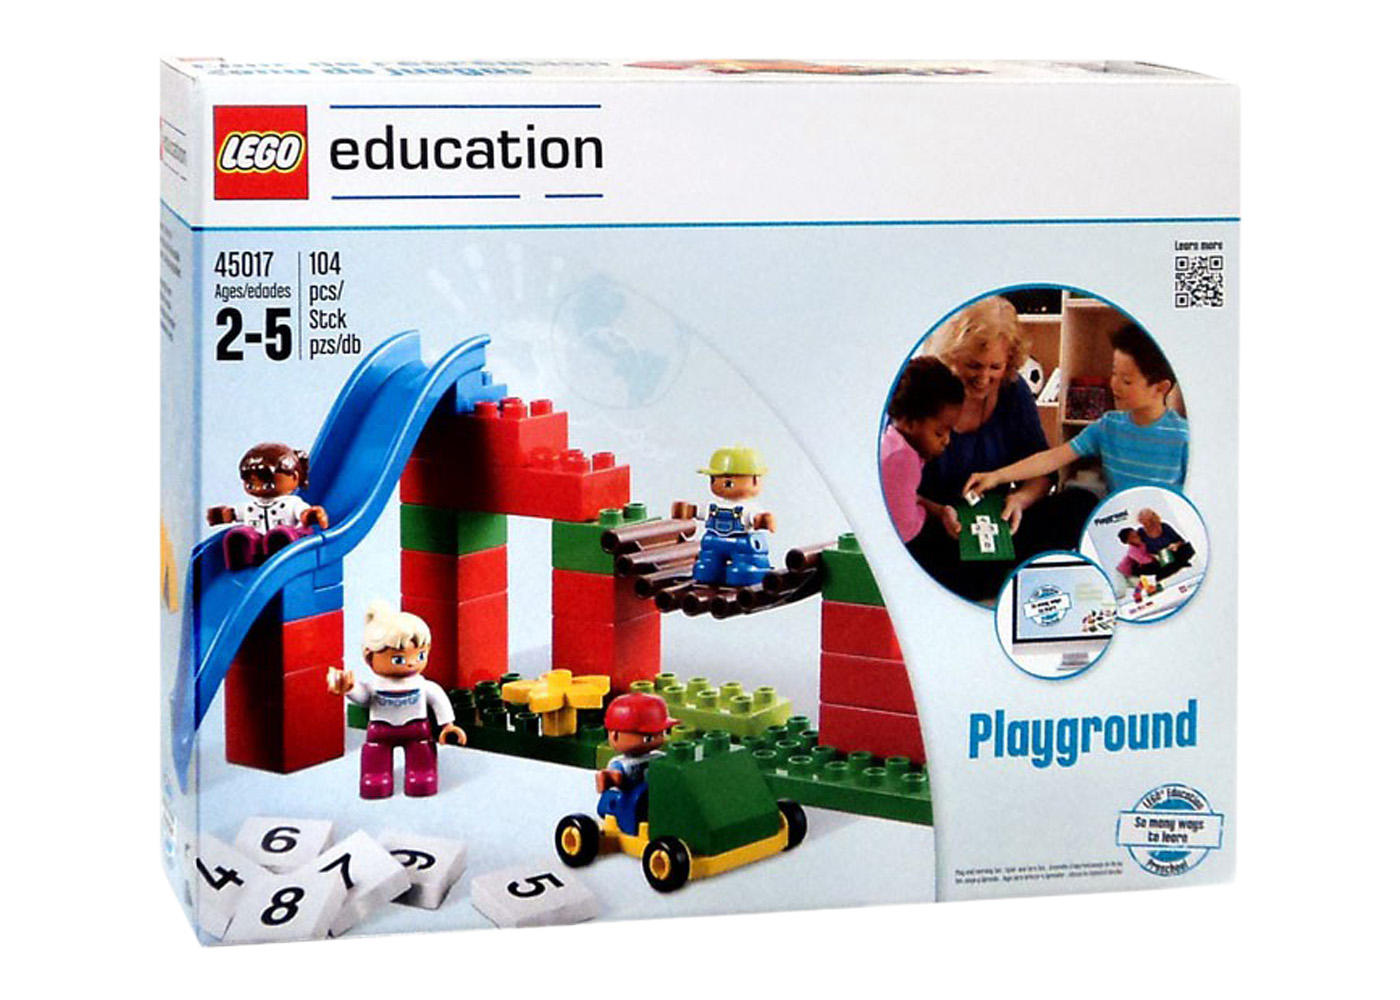 LEGO Education Playground Set 45017 - US